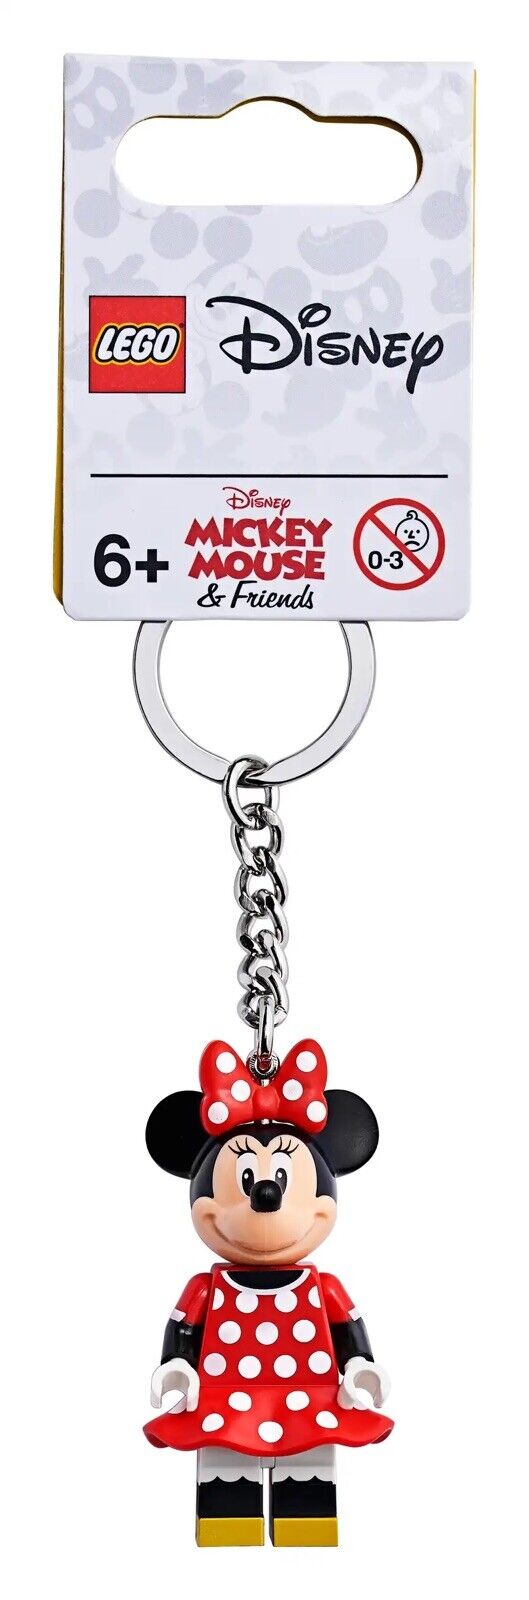 Lego Mini Mouse Key Chain Lot Of 10